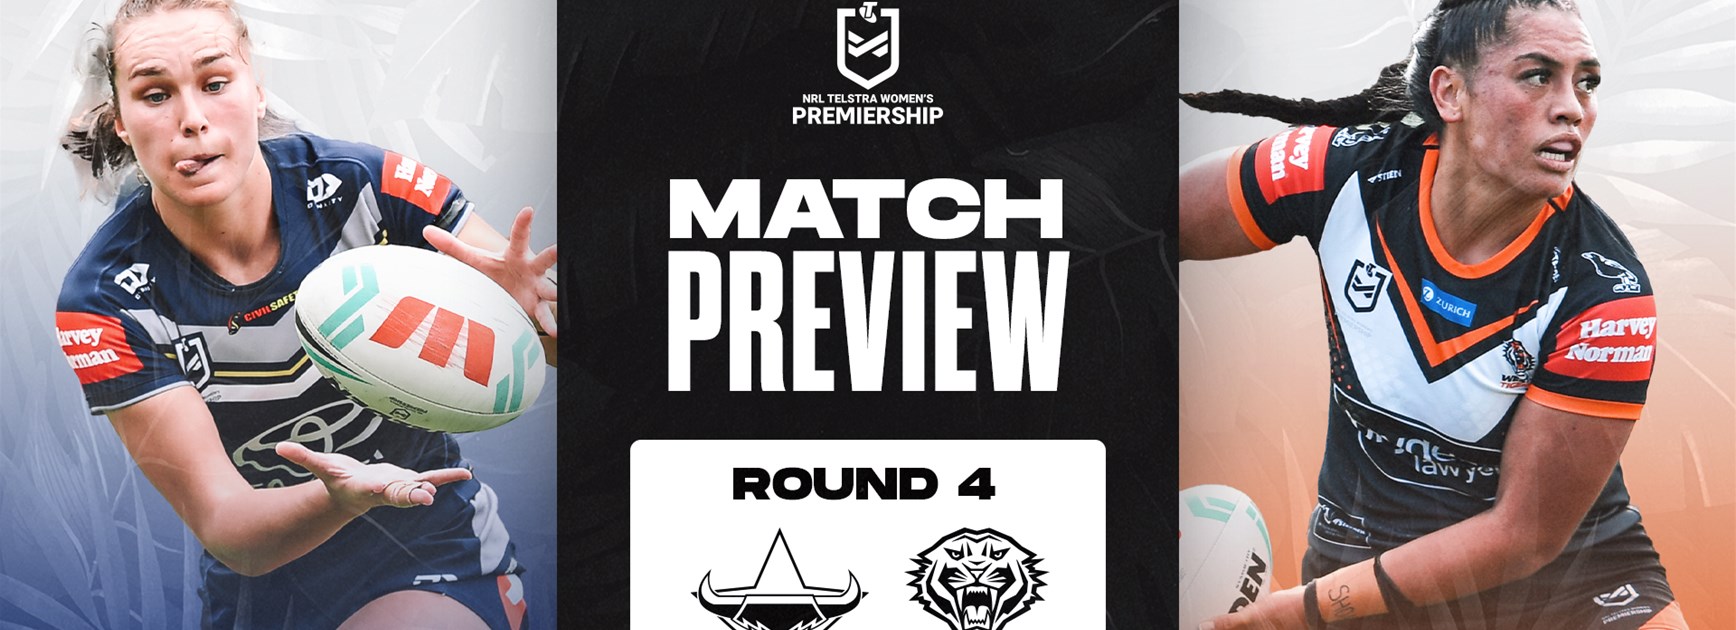 Match Preview: NRLW Round 4 vs Cowboys